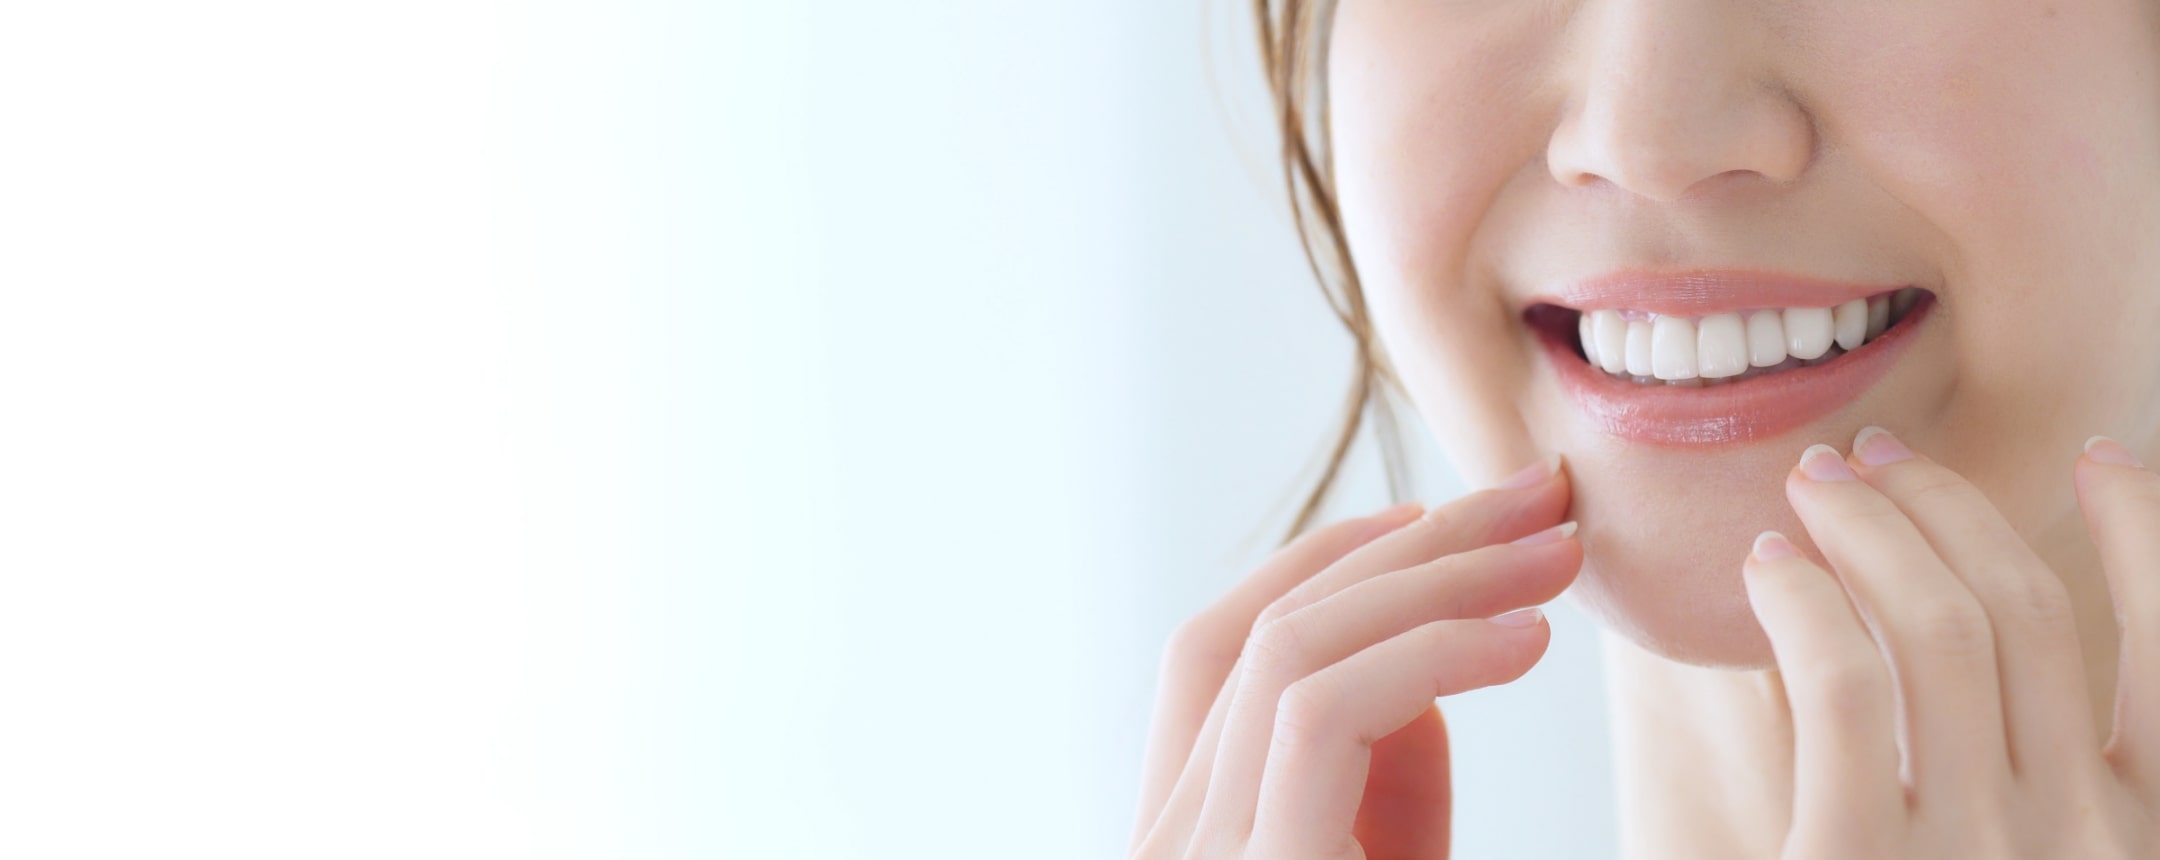 真のホワイトニングの普及、「笑顔に自信」をもたらす予防歯科の推進。